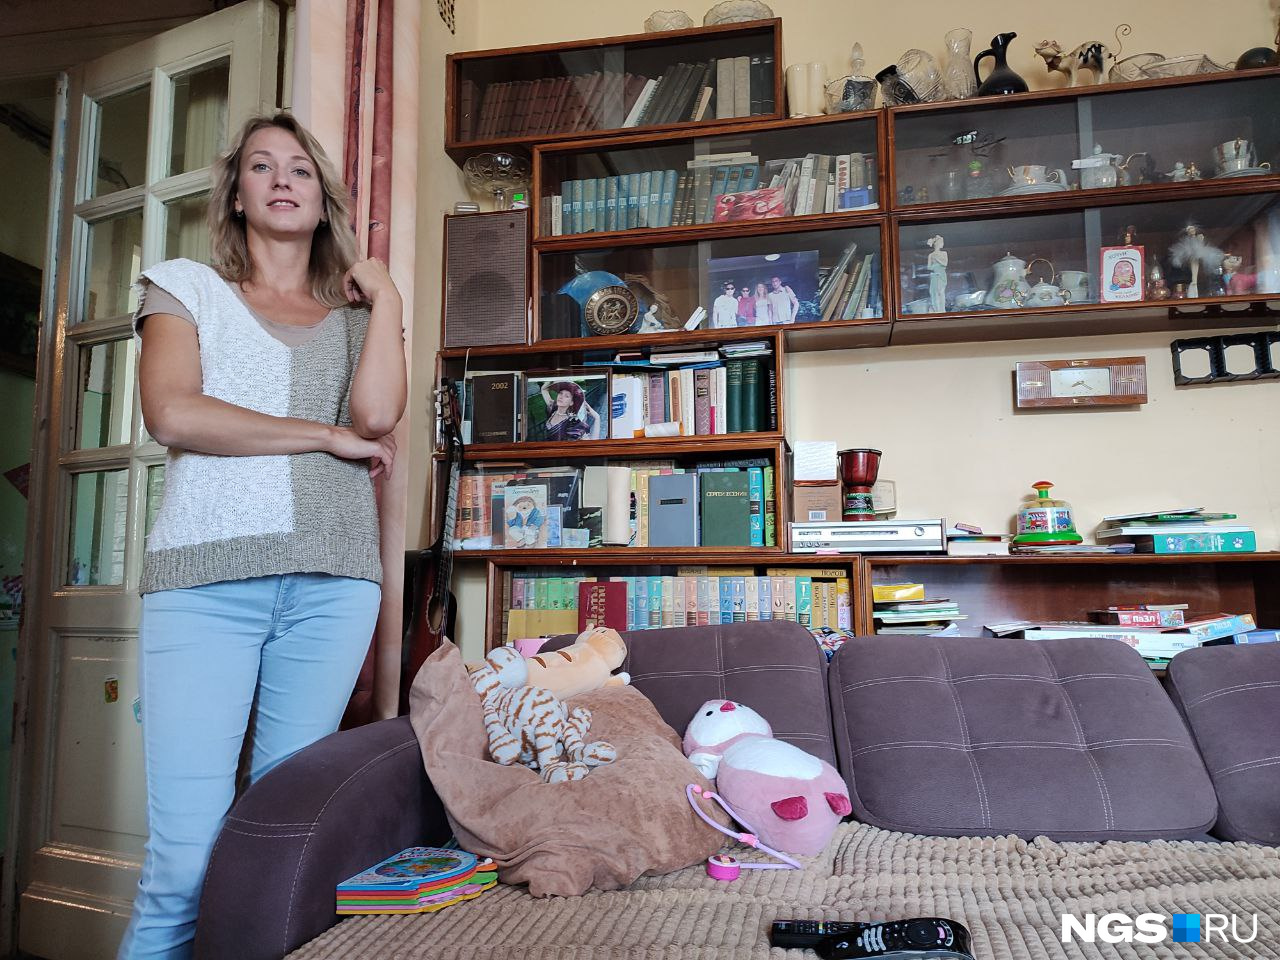 Юлия Бердышева живет в «профессорском доме» с самого детства и однажды пережила обвалившийся в комнате потолок